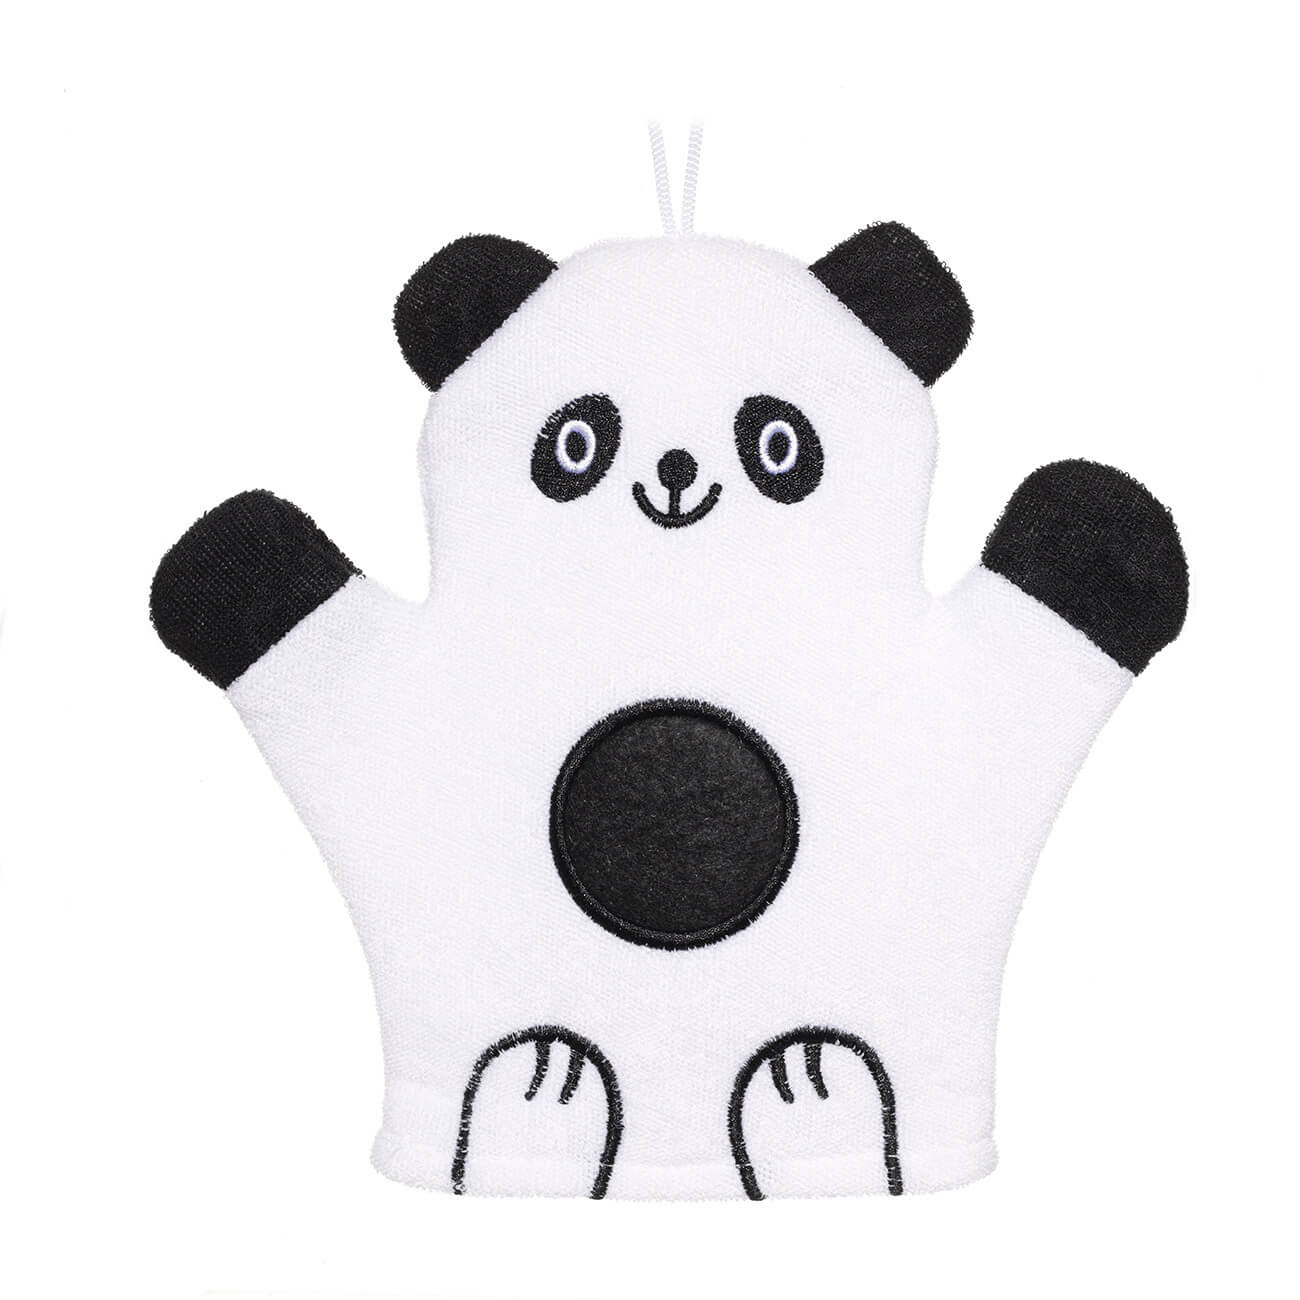 Мочалка-варежка для мытья тела, 20х20 см, детская, полиэстер, черно-белая, Панда, Panda шар фольгированный 30 панда